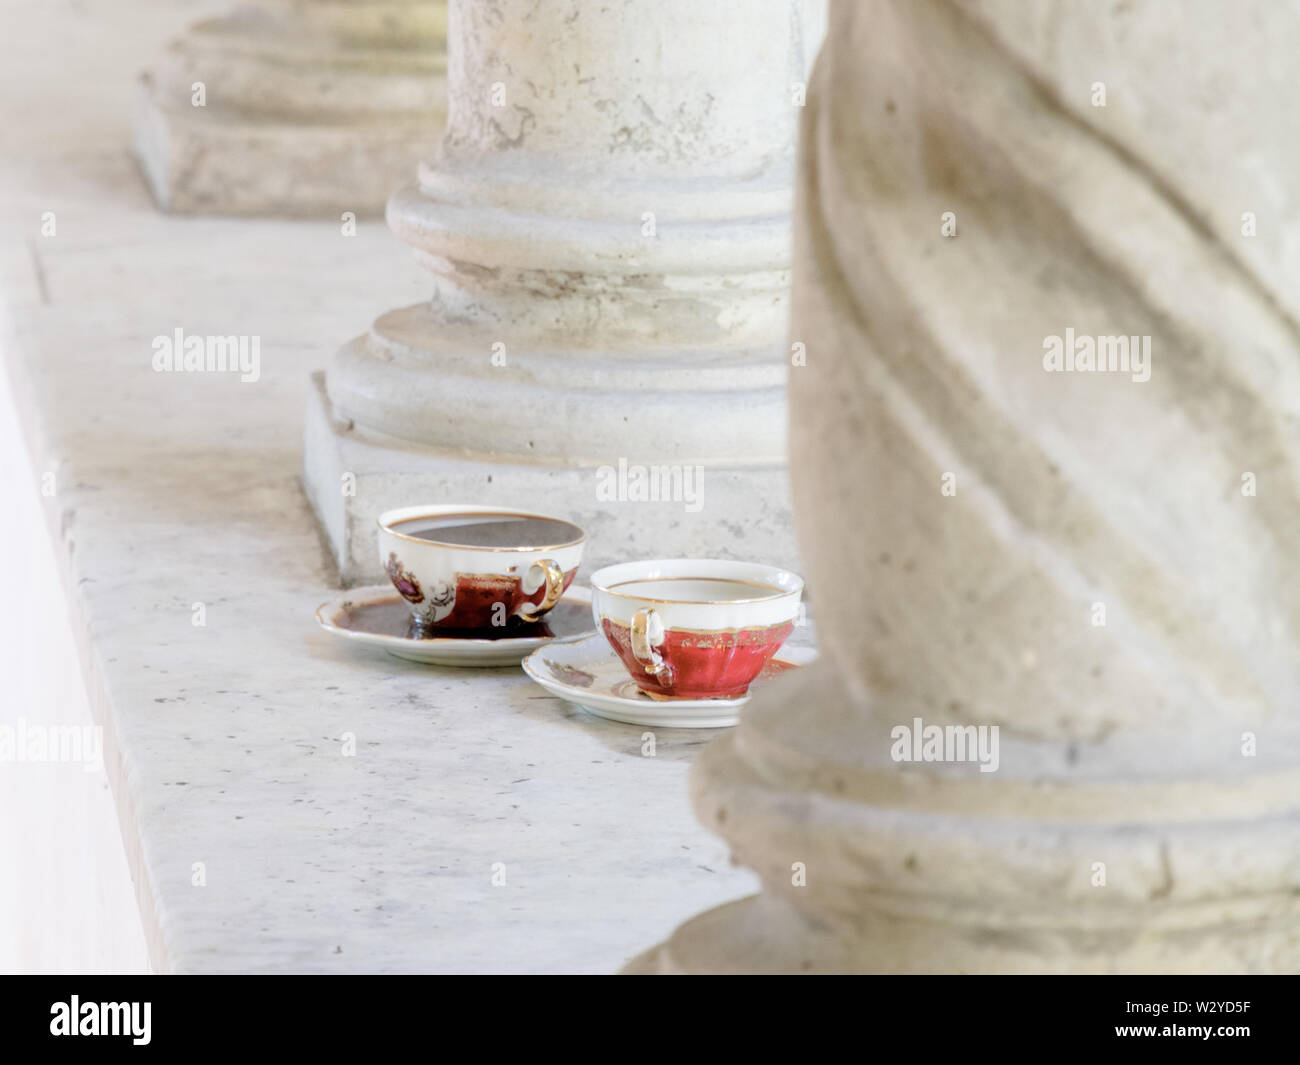 Eine romantische Verabredung an diesem einsamen Tasse Kaffee suchen Stellen Sie sich vor, Stockfoto